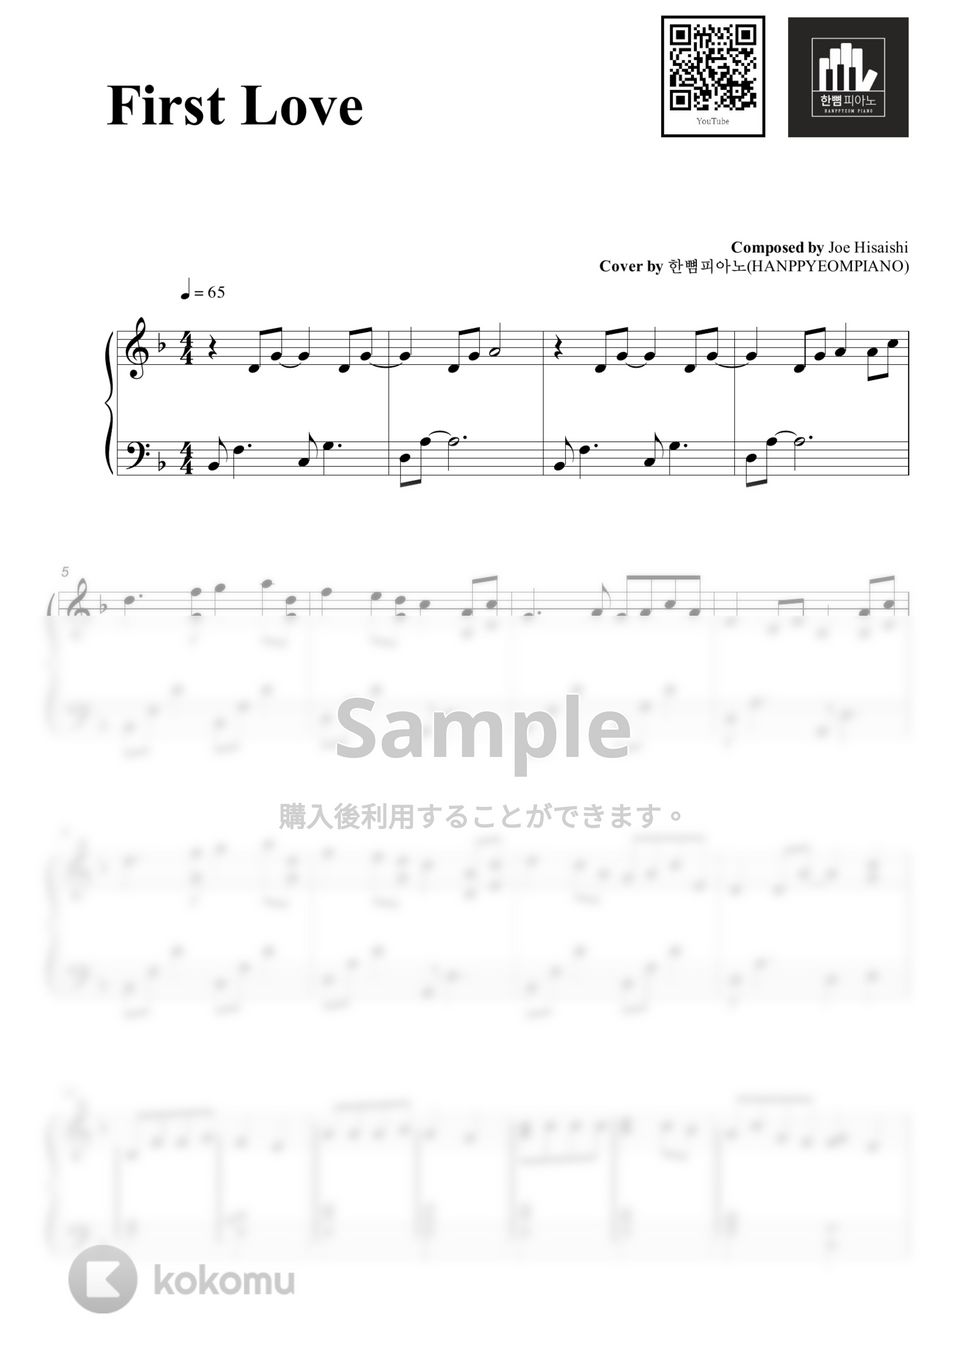 Joe Hisaishi - First Love (PIANO COVER) by HANPPYEOMPIANO